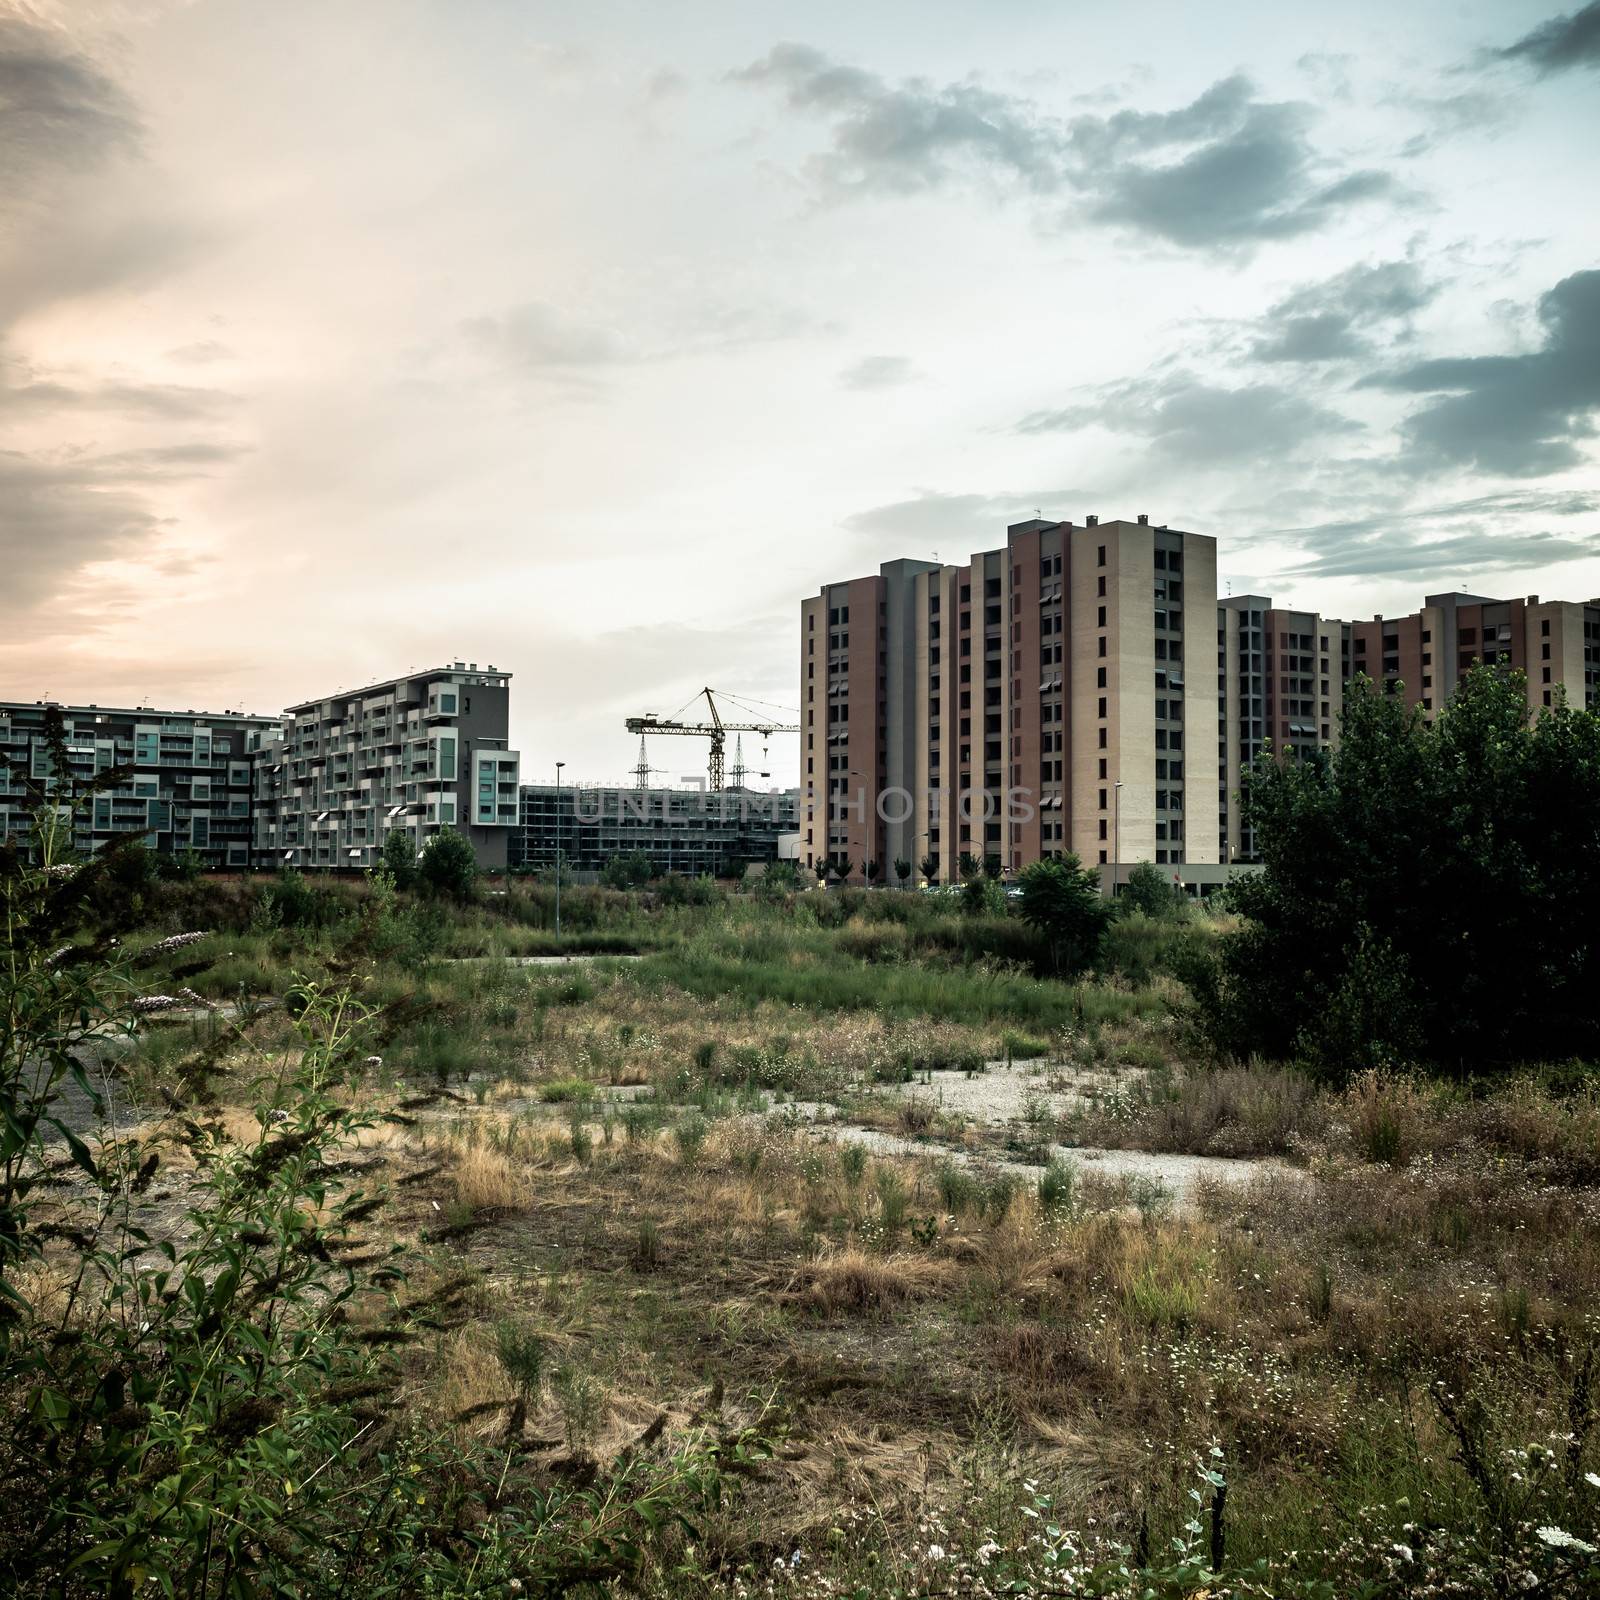 desolate suburb landscape by peus